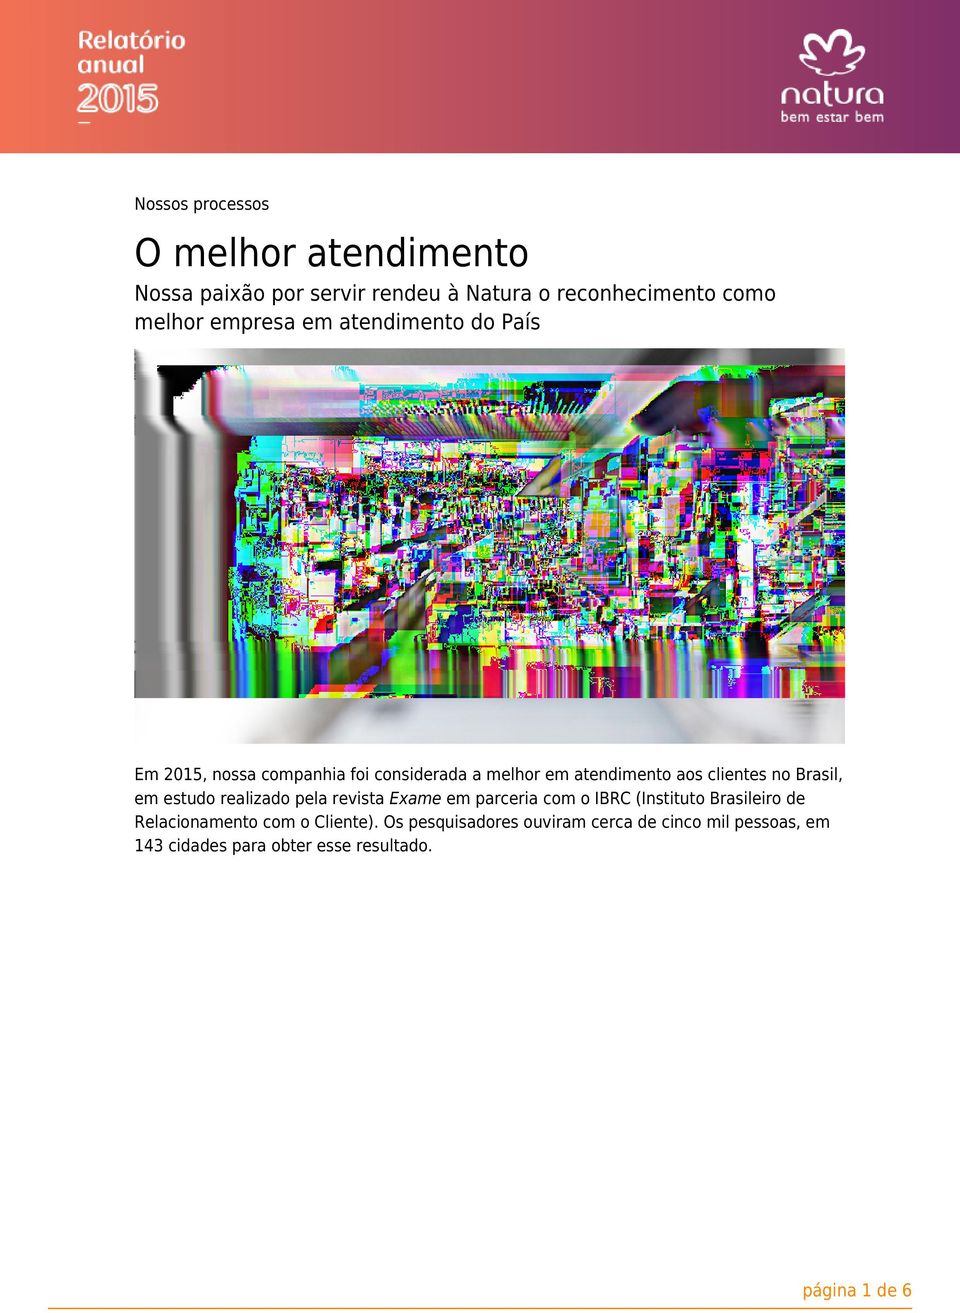 Brasil, em estudo realizado pela revista Exame em parceria com o IBRC (Instituto Brasileiro de Relacionamento com